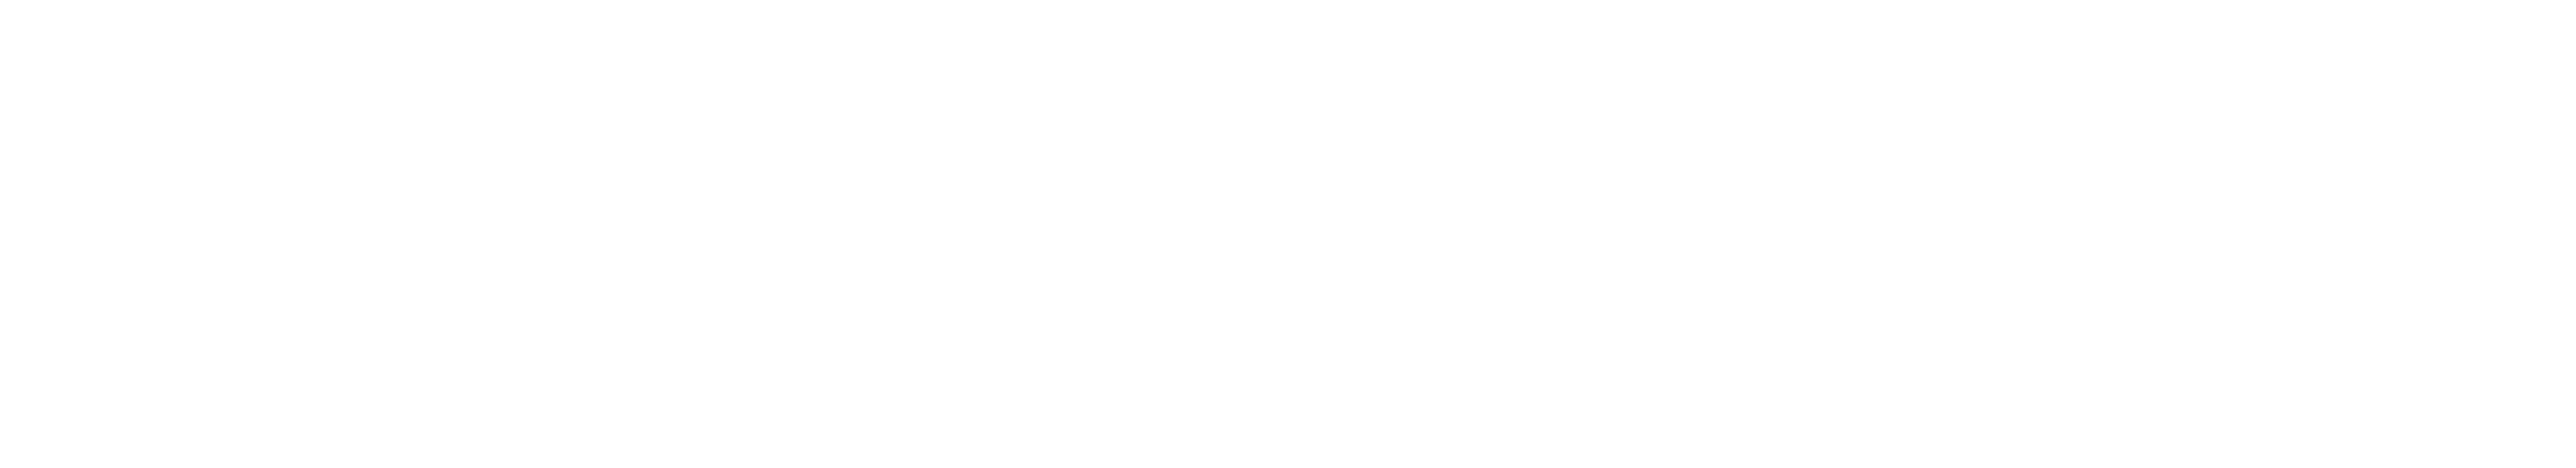 信息无障碍产品联盟logo